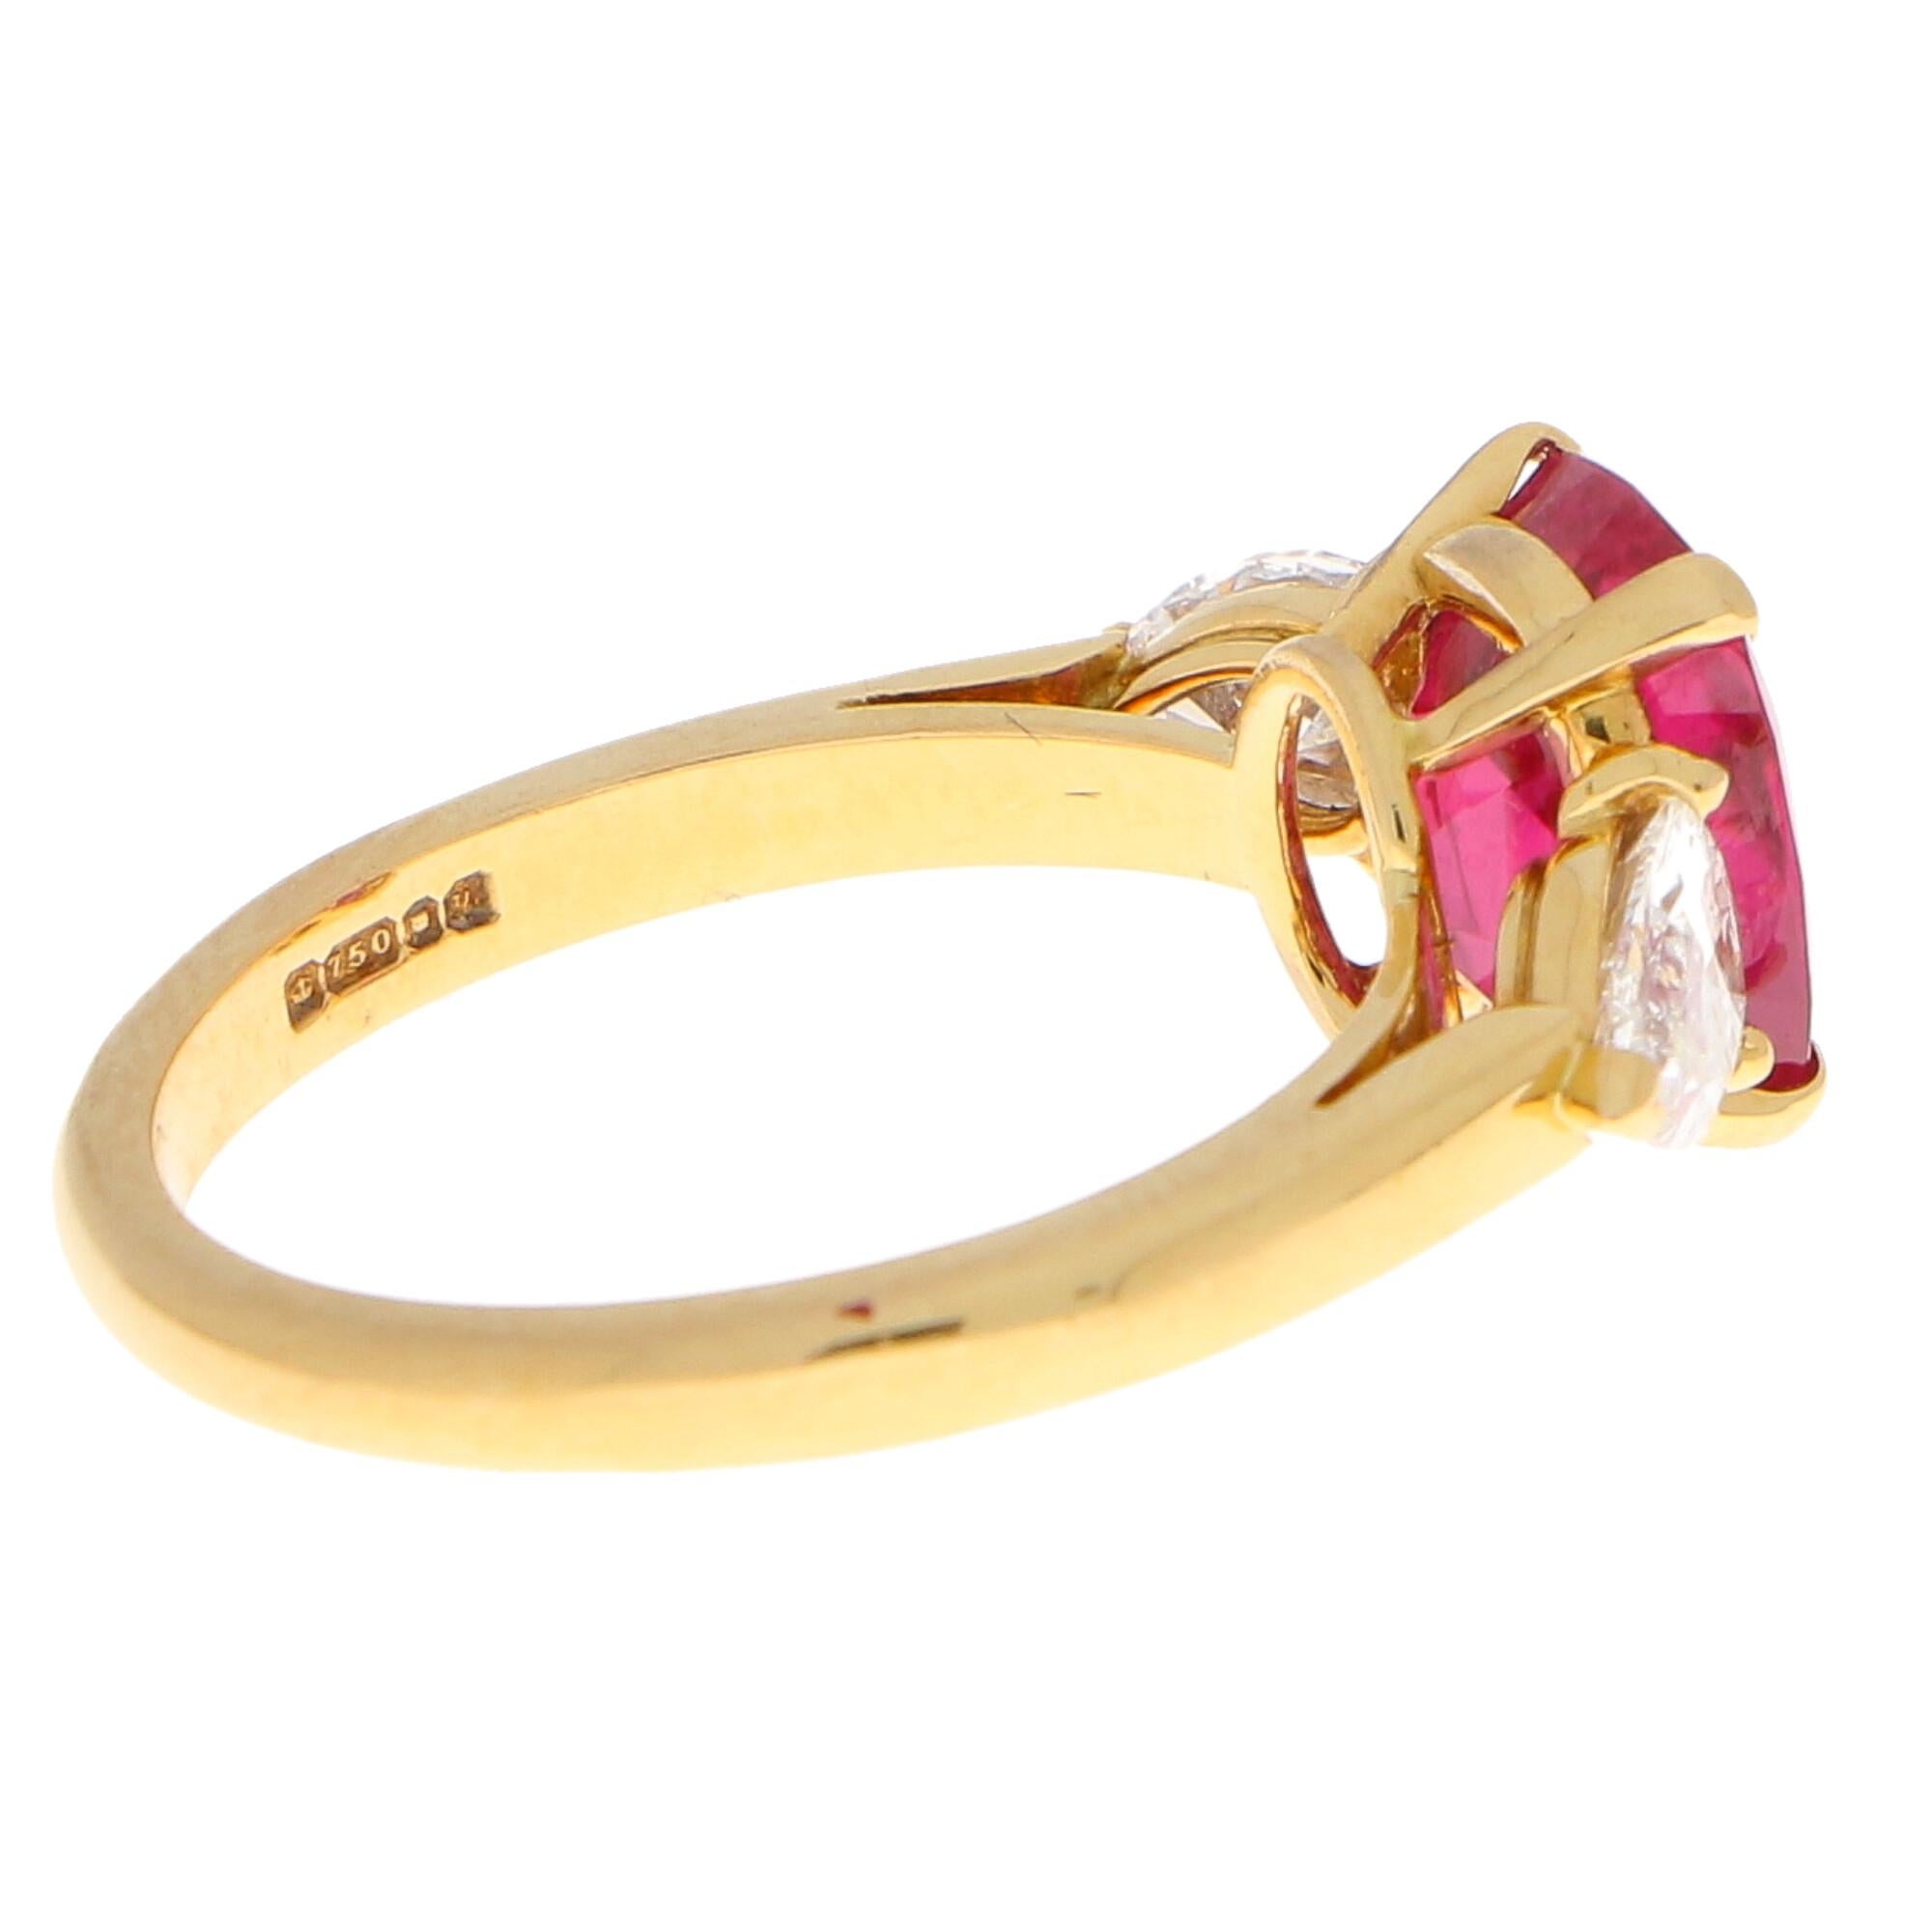 Modern 3.58 Carat Burmese Red Ruby and Diamond Ring Set in 18 Karat Yellow Gold